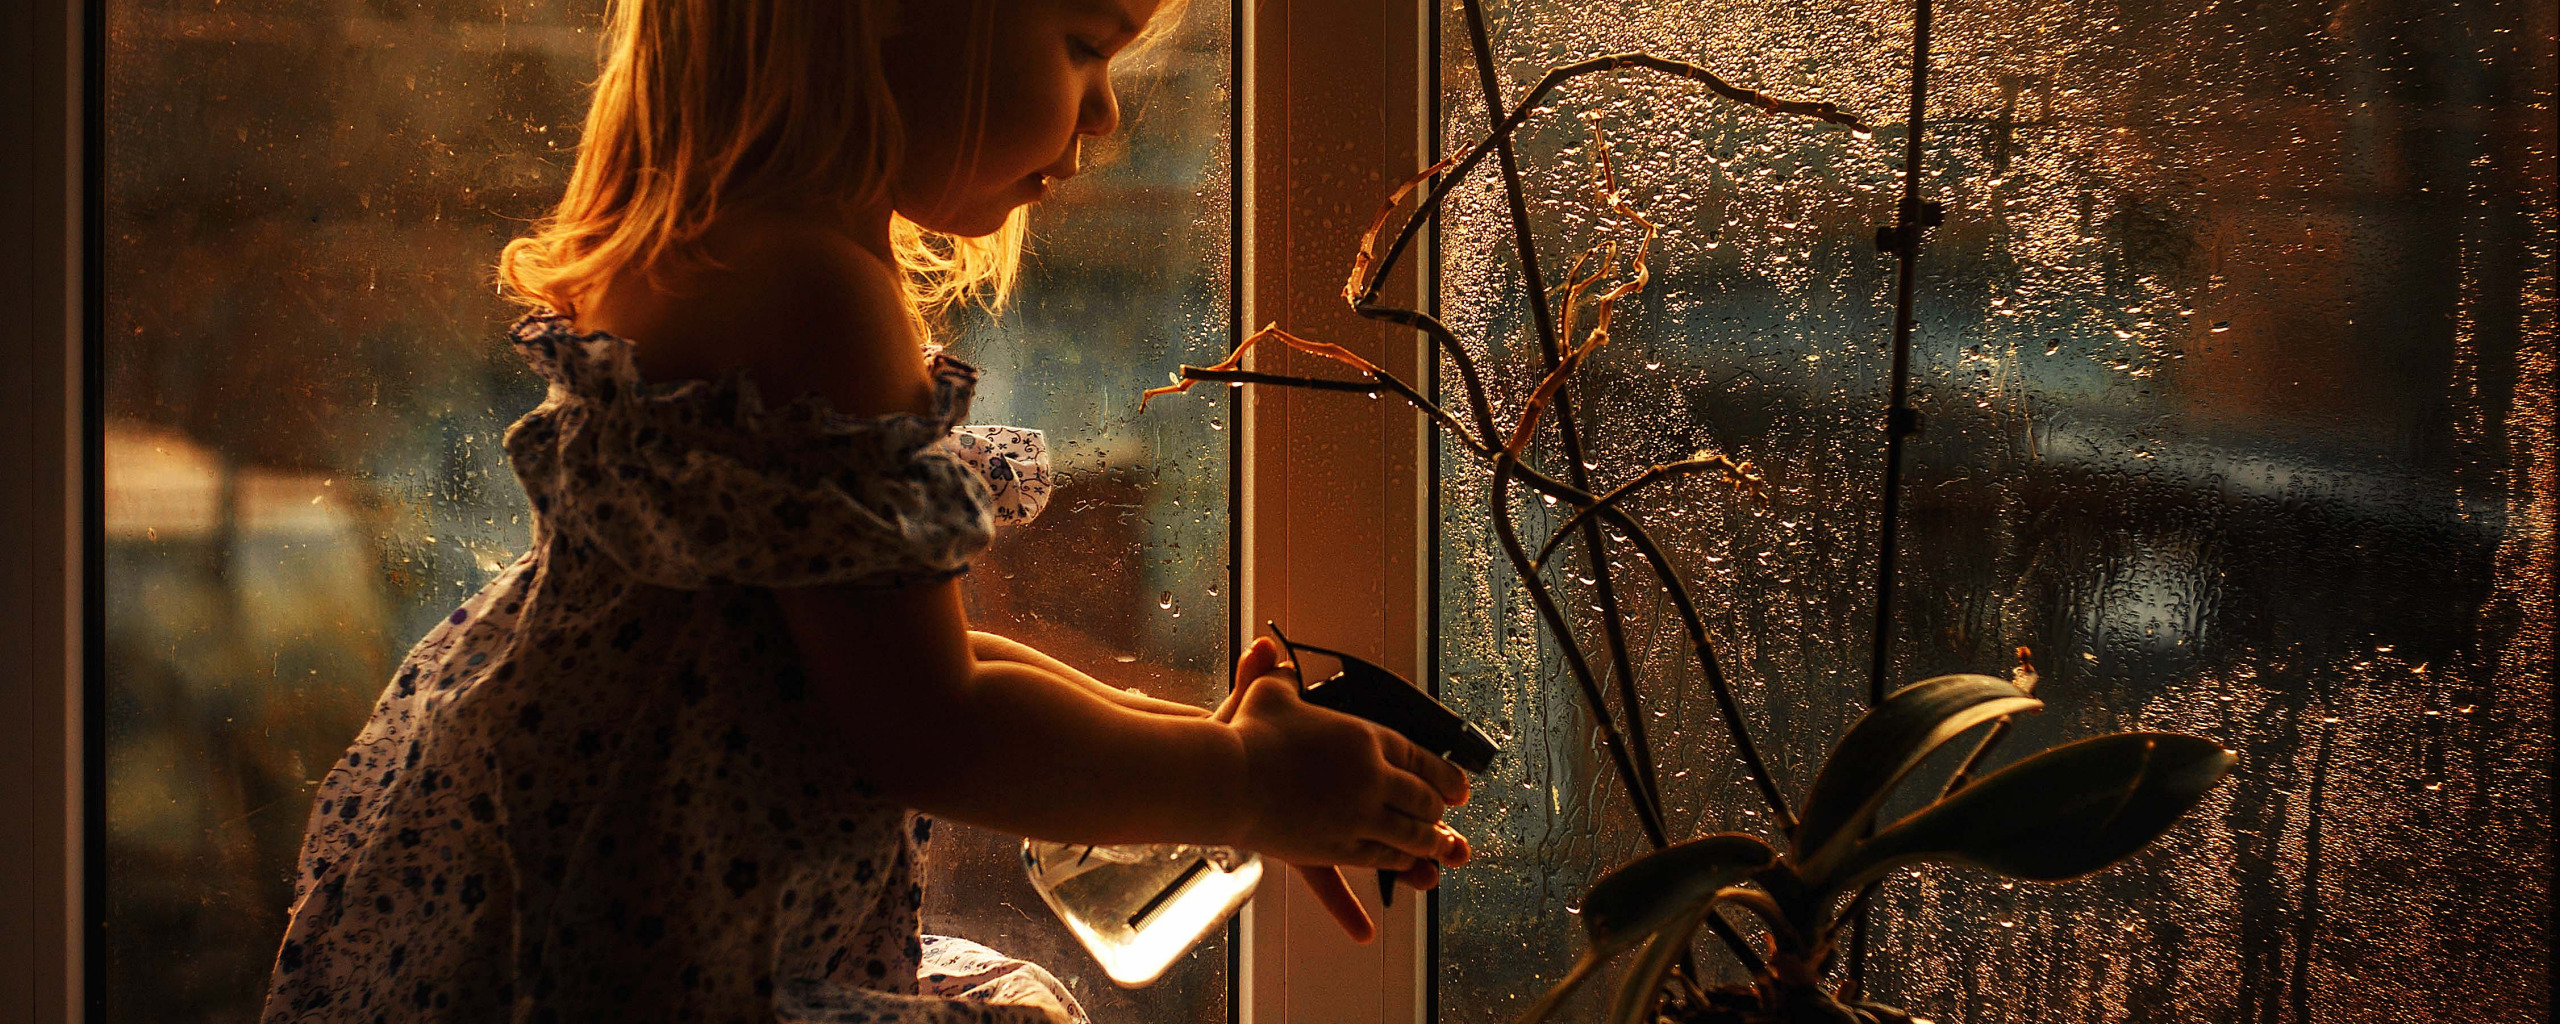 Посмотри в окно песня. Пластиковые окна девушка. Цветок на окне шпионы. Девушка с цветами у окна.